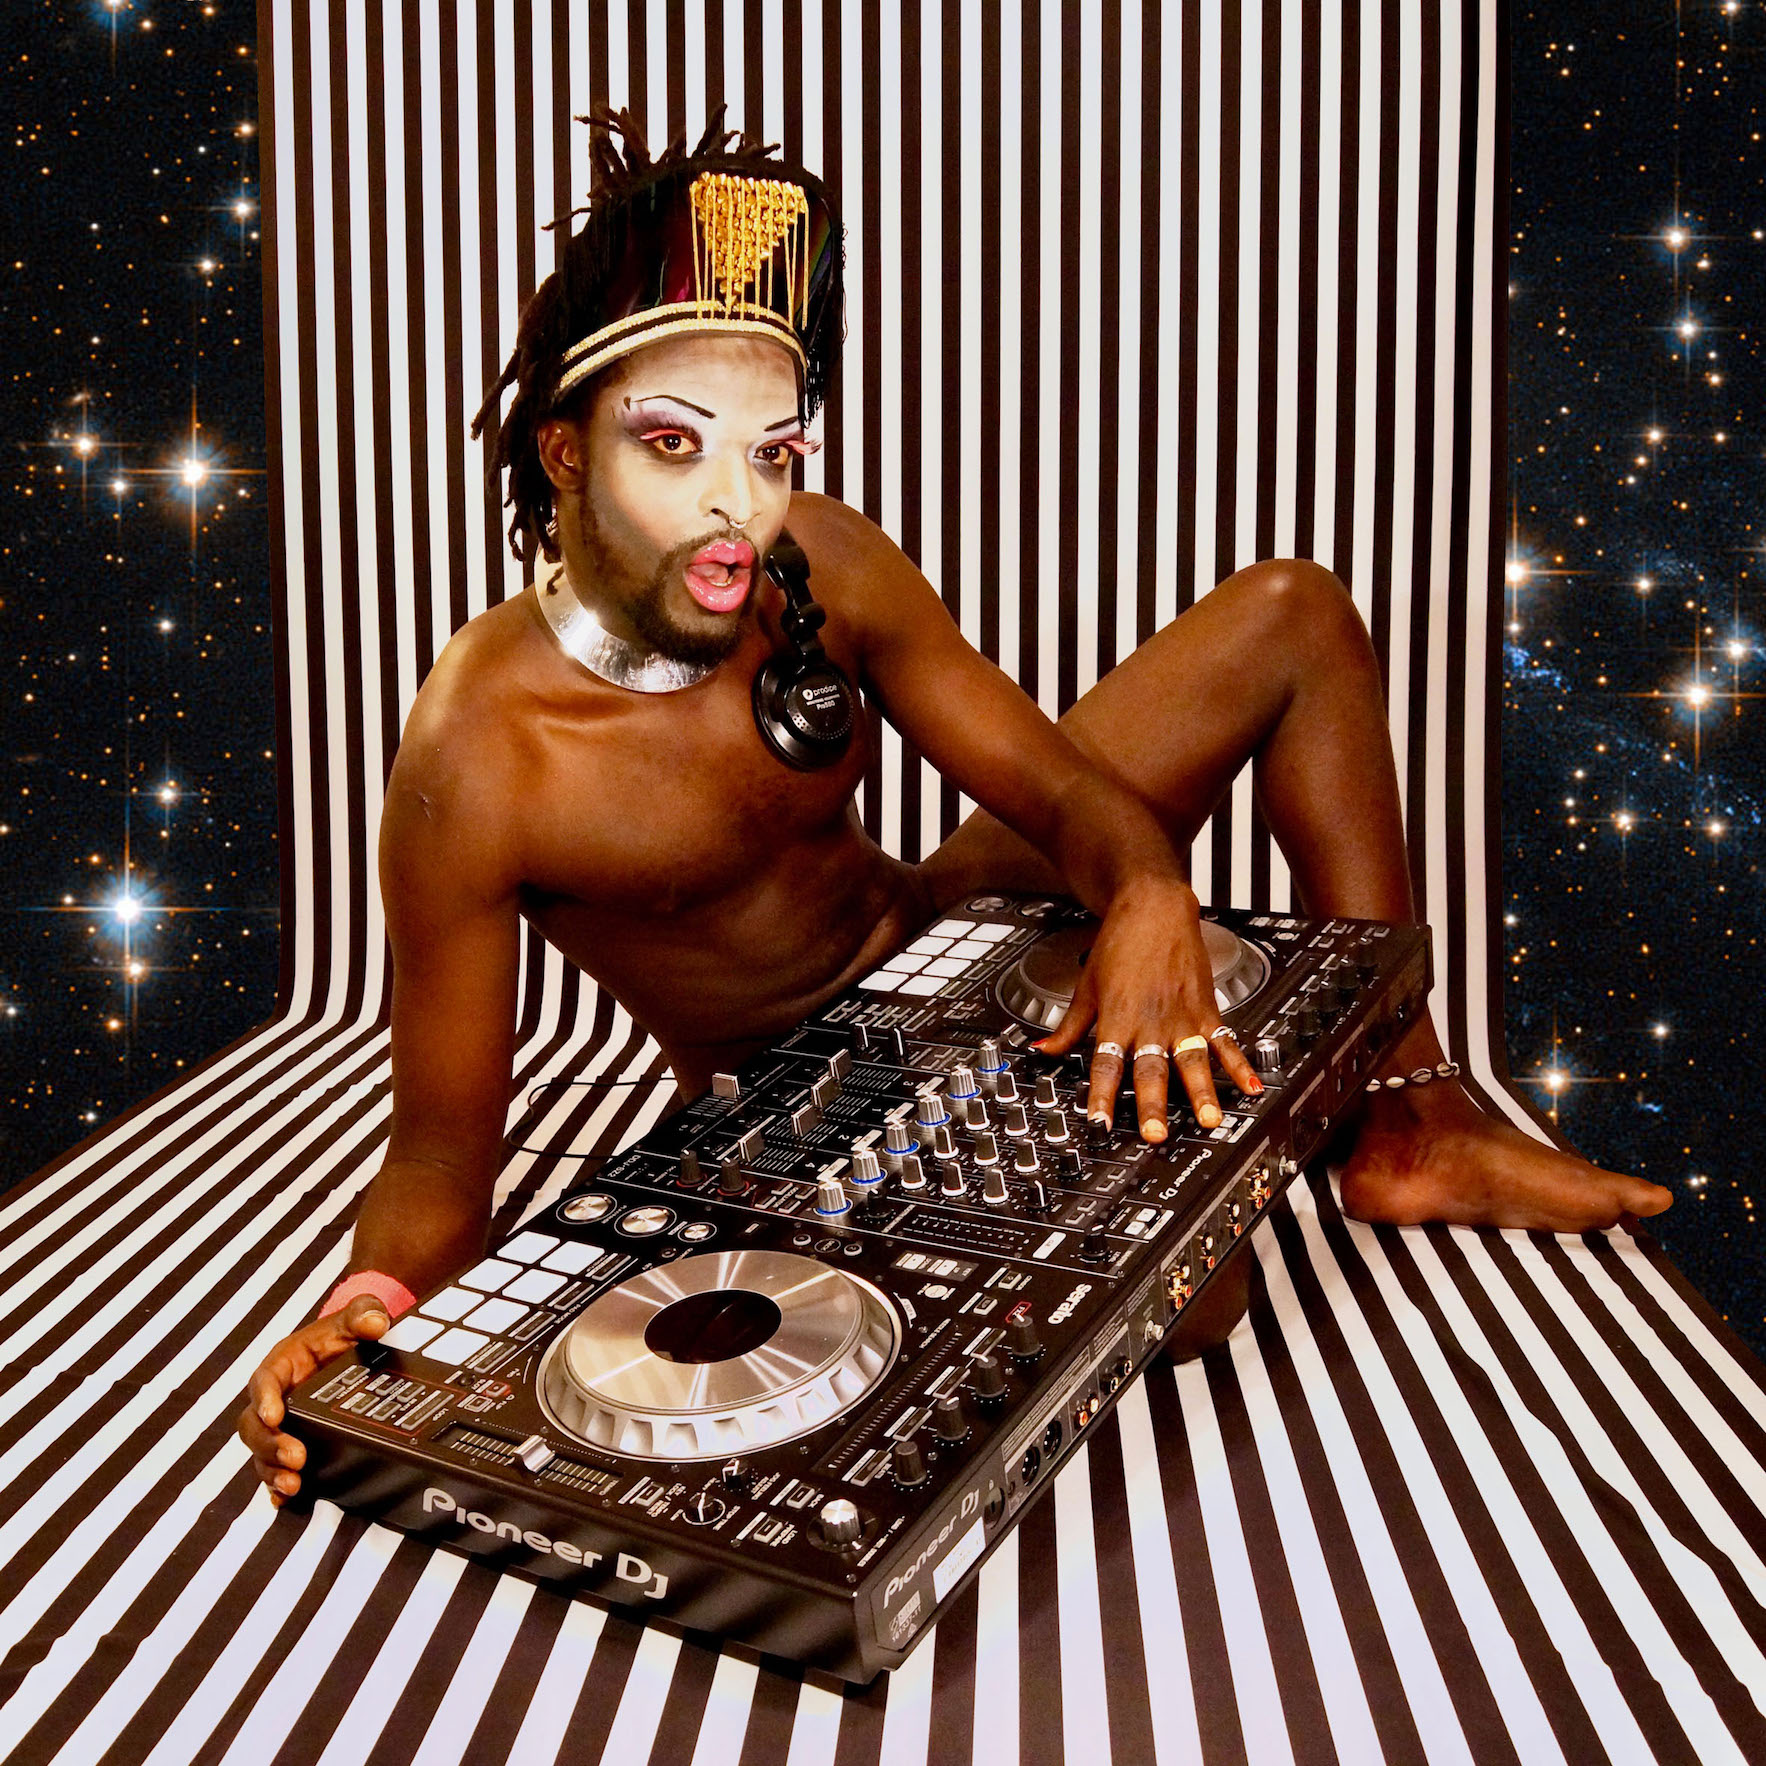 Mach dich locker und tanz mit den Afro-Sounds von DJ Waxs durch die Nacht.